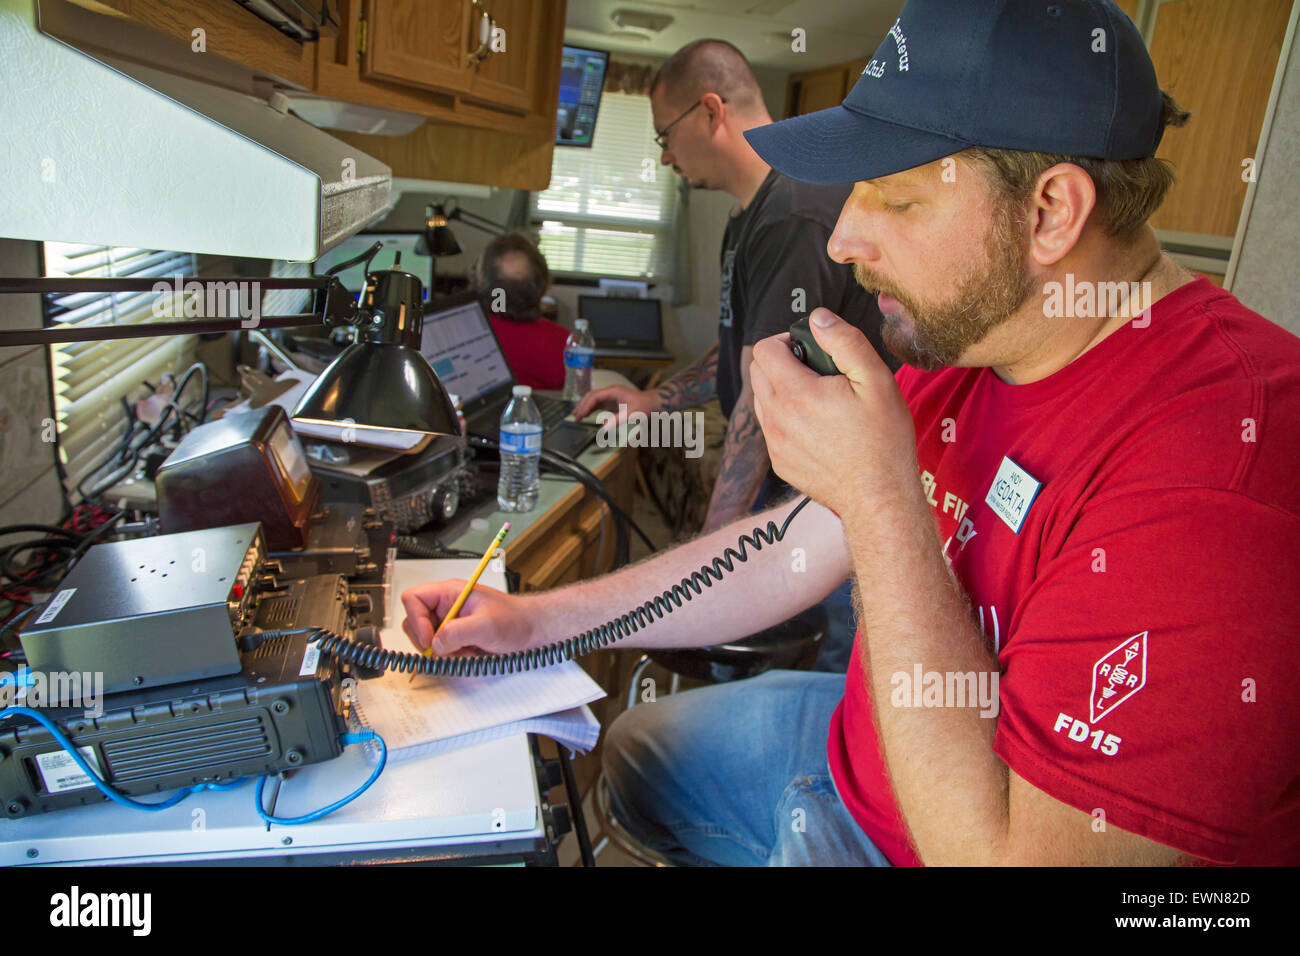 Livonia, Michigan - Amateur radio operators participate in the American Radio Relay League's annual field day. Stock Photo